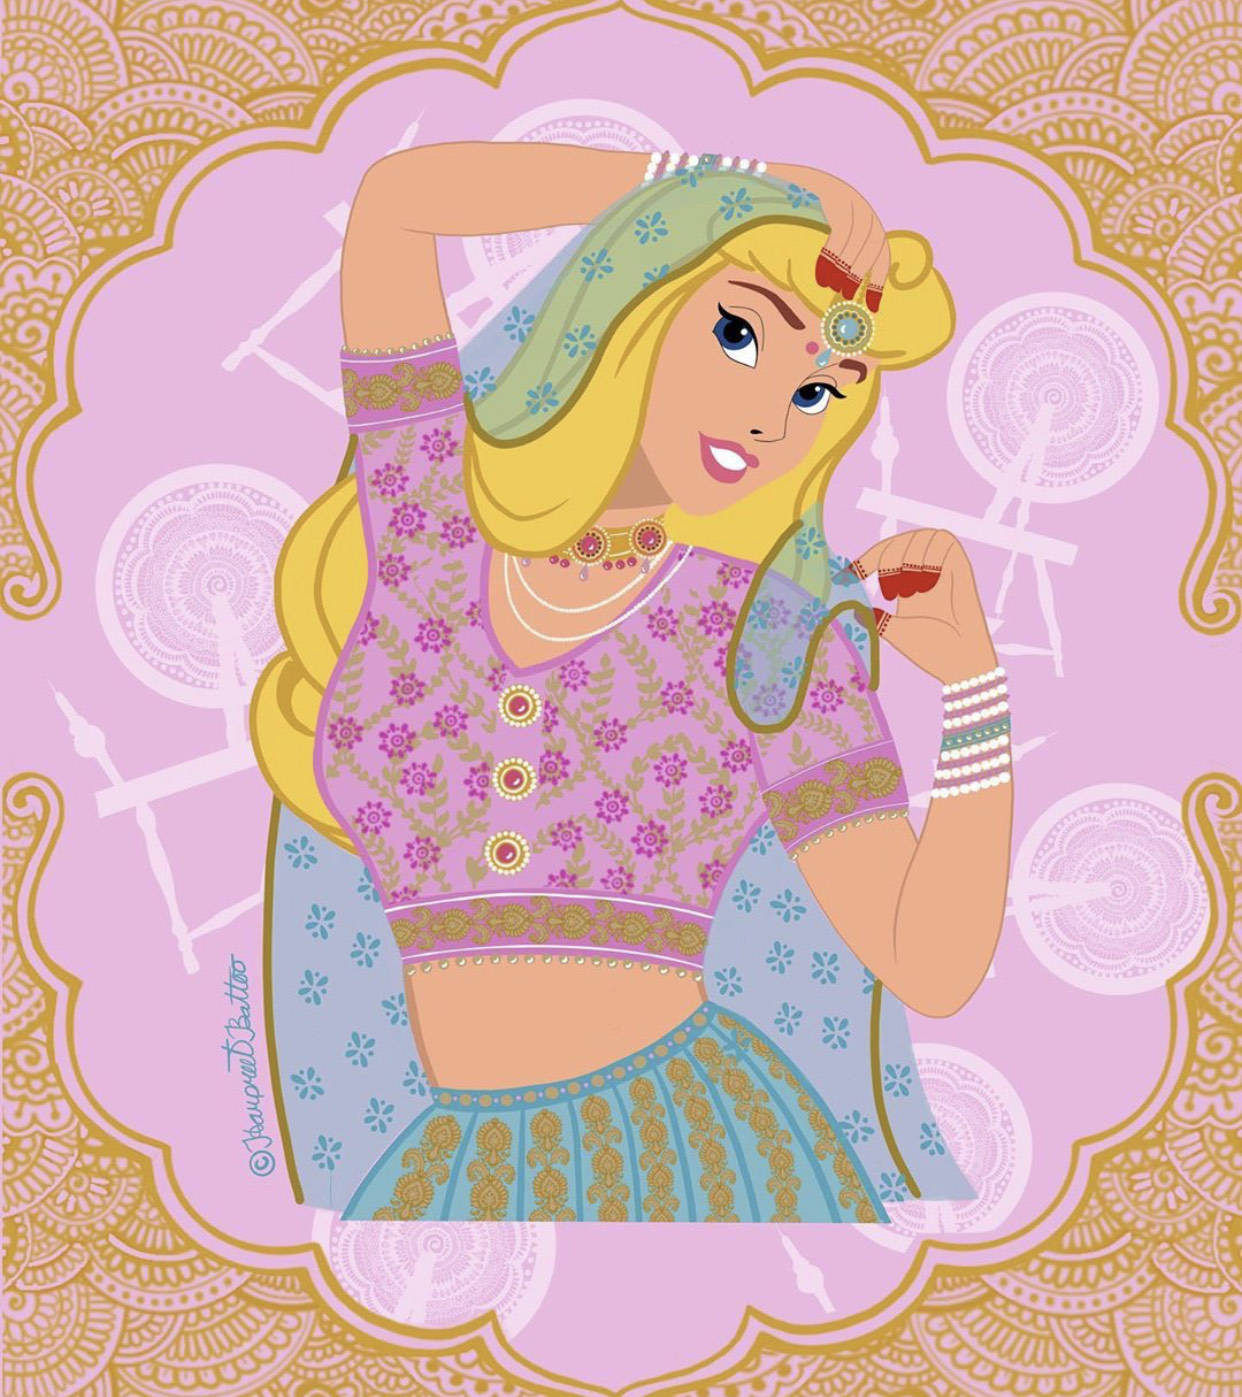 "印度风"下的迪士尼公主,全员皆异域风情,爱丽儿穿鼻环可真疼